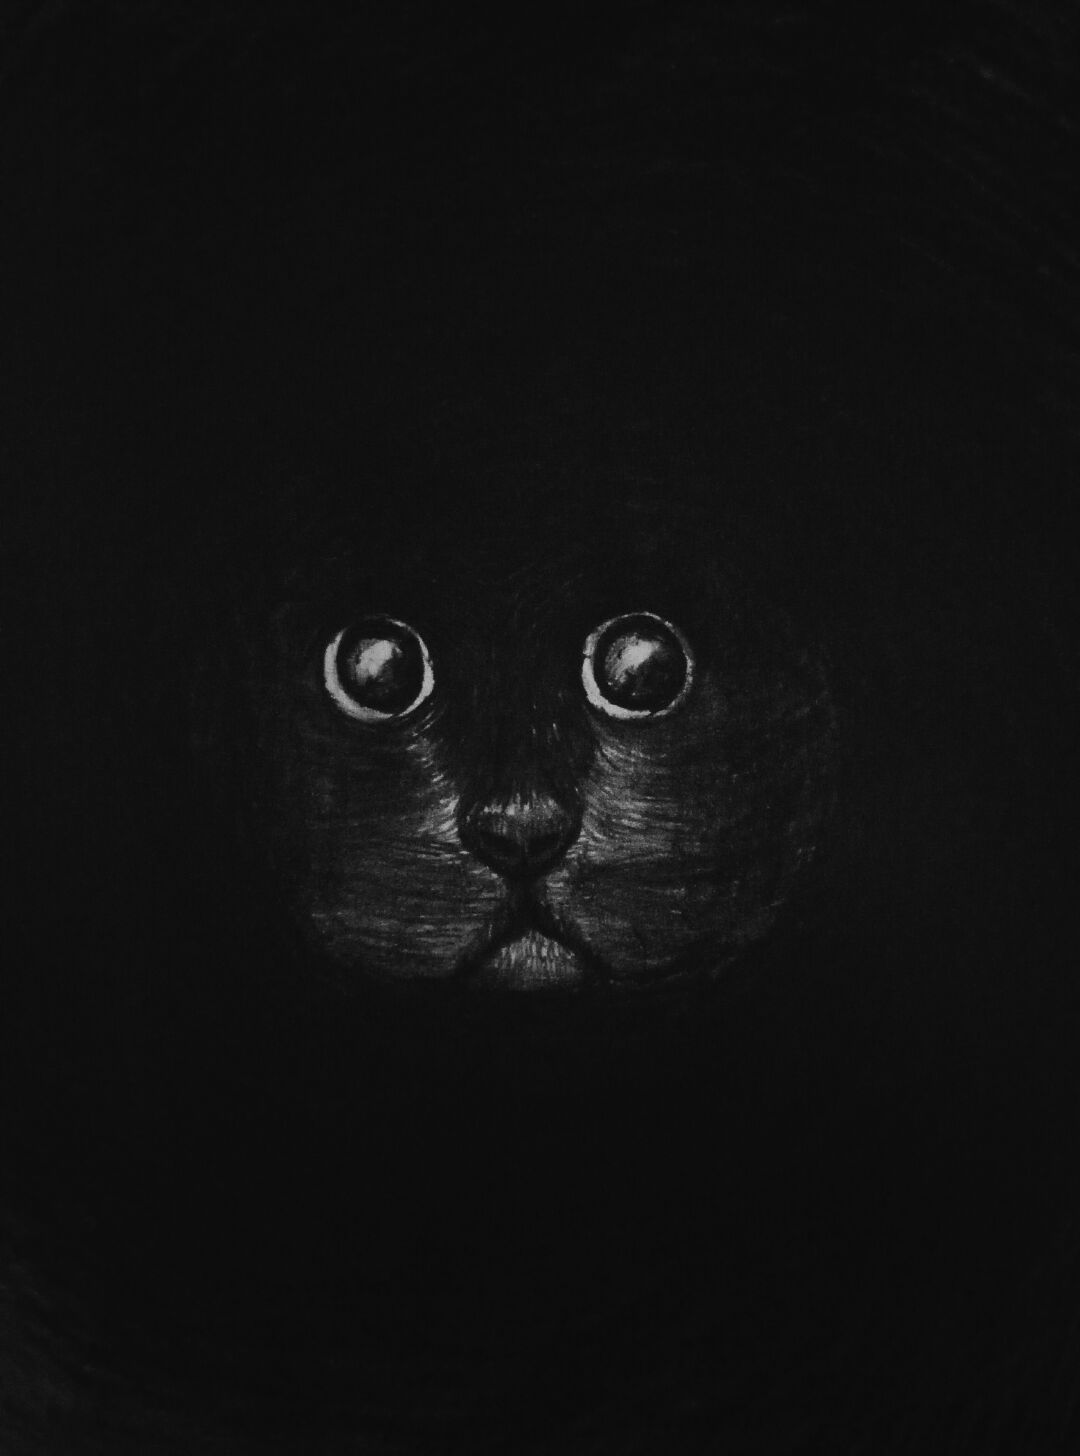 画一只小黑猫，教程简单，
大家能看懂就好。